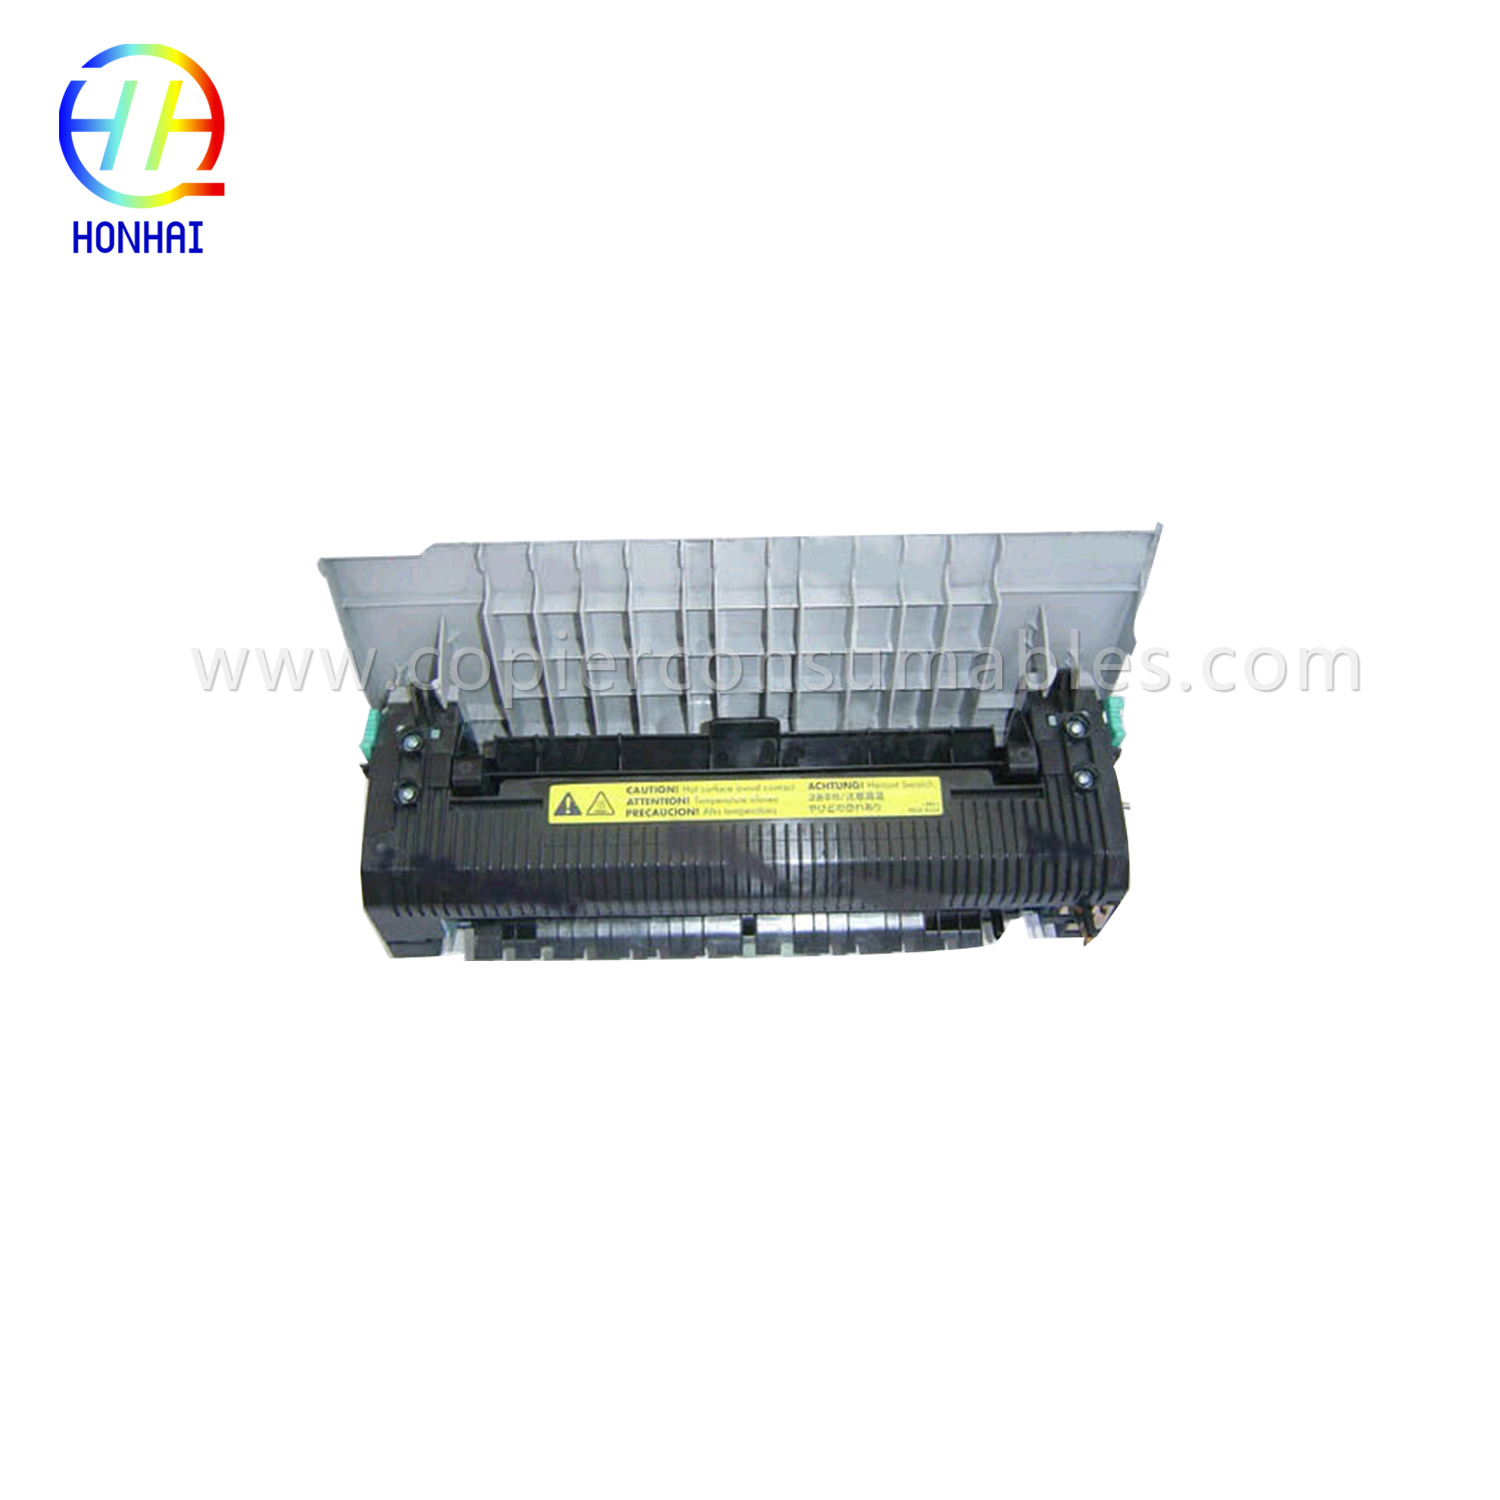 Fixeringsenhet för HP Color LaserJet 2550 2550L 2550ln 2550n (RG5-7572-110Cn)